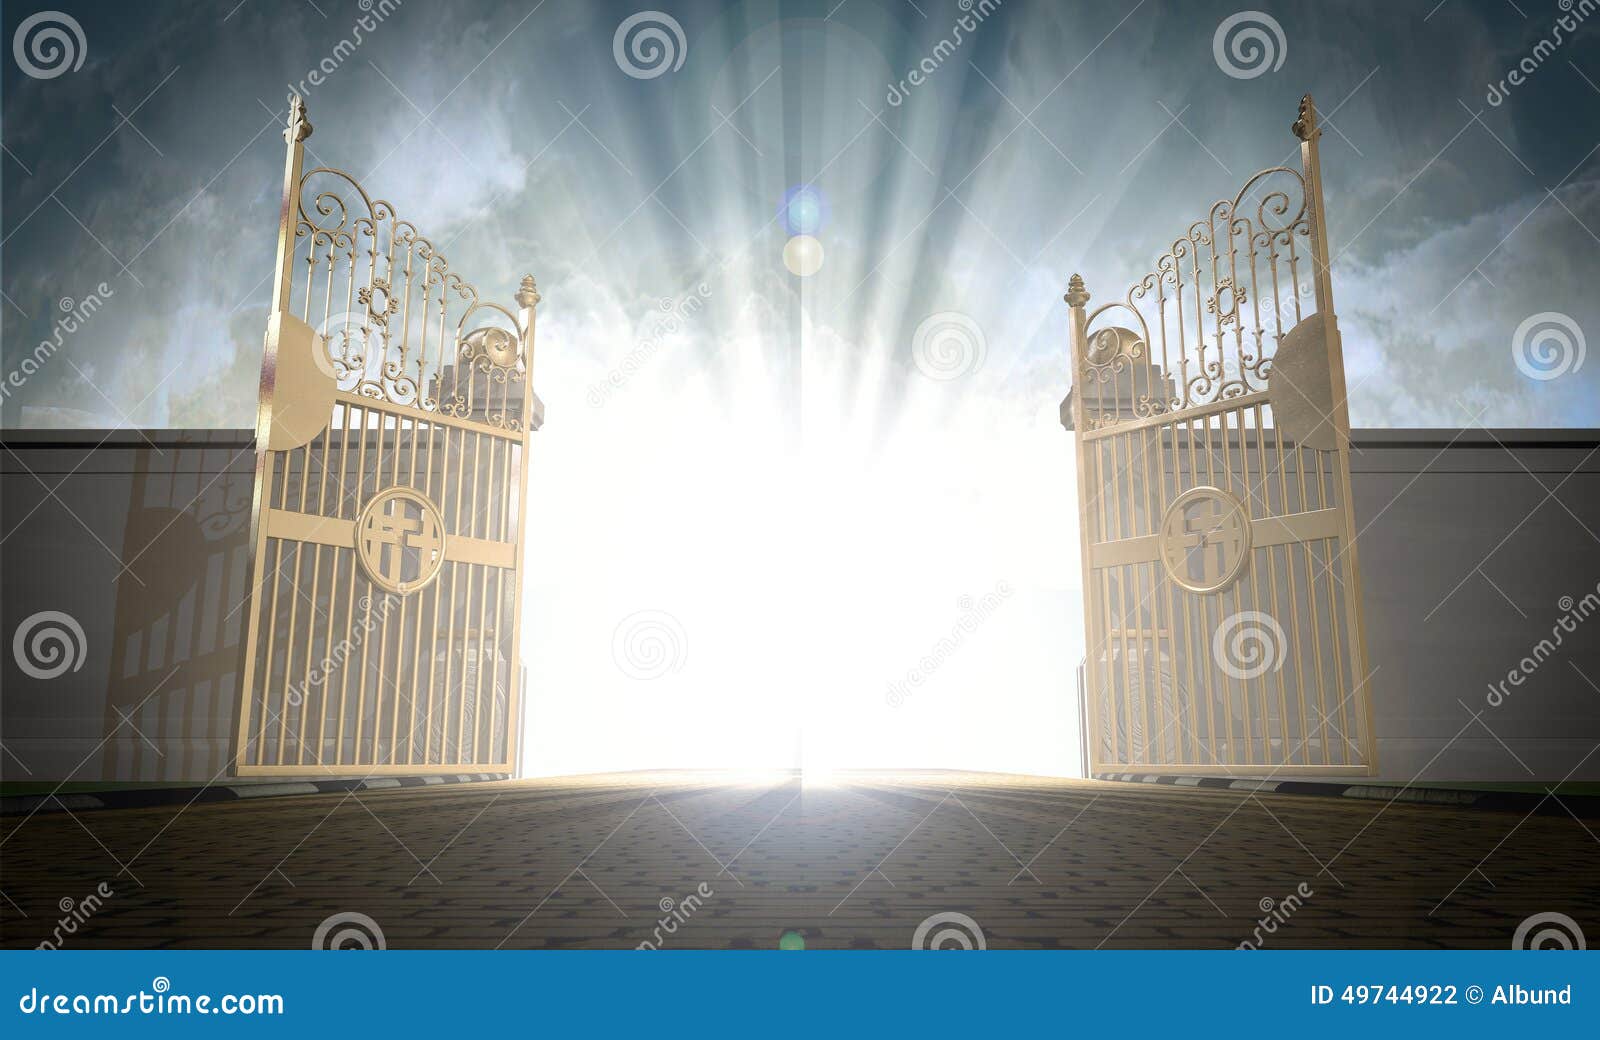 heavens gates opening